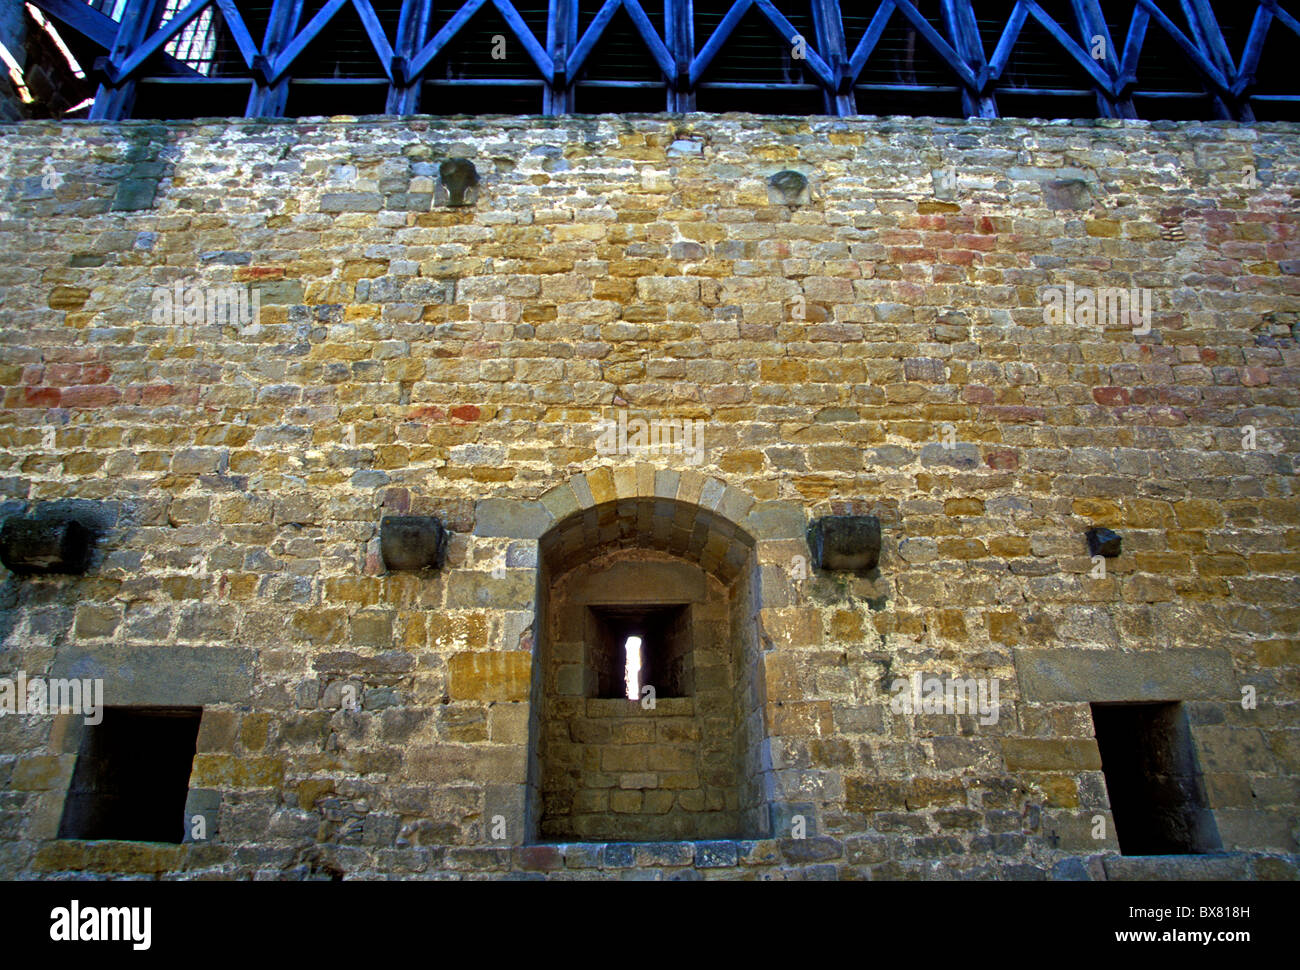 Conte il castello, Chateau Comtal, fortezza militare, cataro guerre crociate albigese, la cite, città di Carcassonne, languedoc-roussillon, Francia Foto Stock